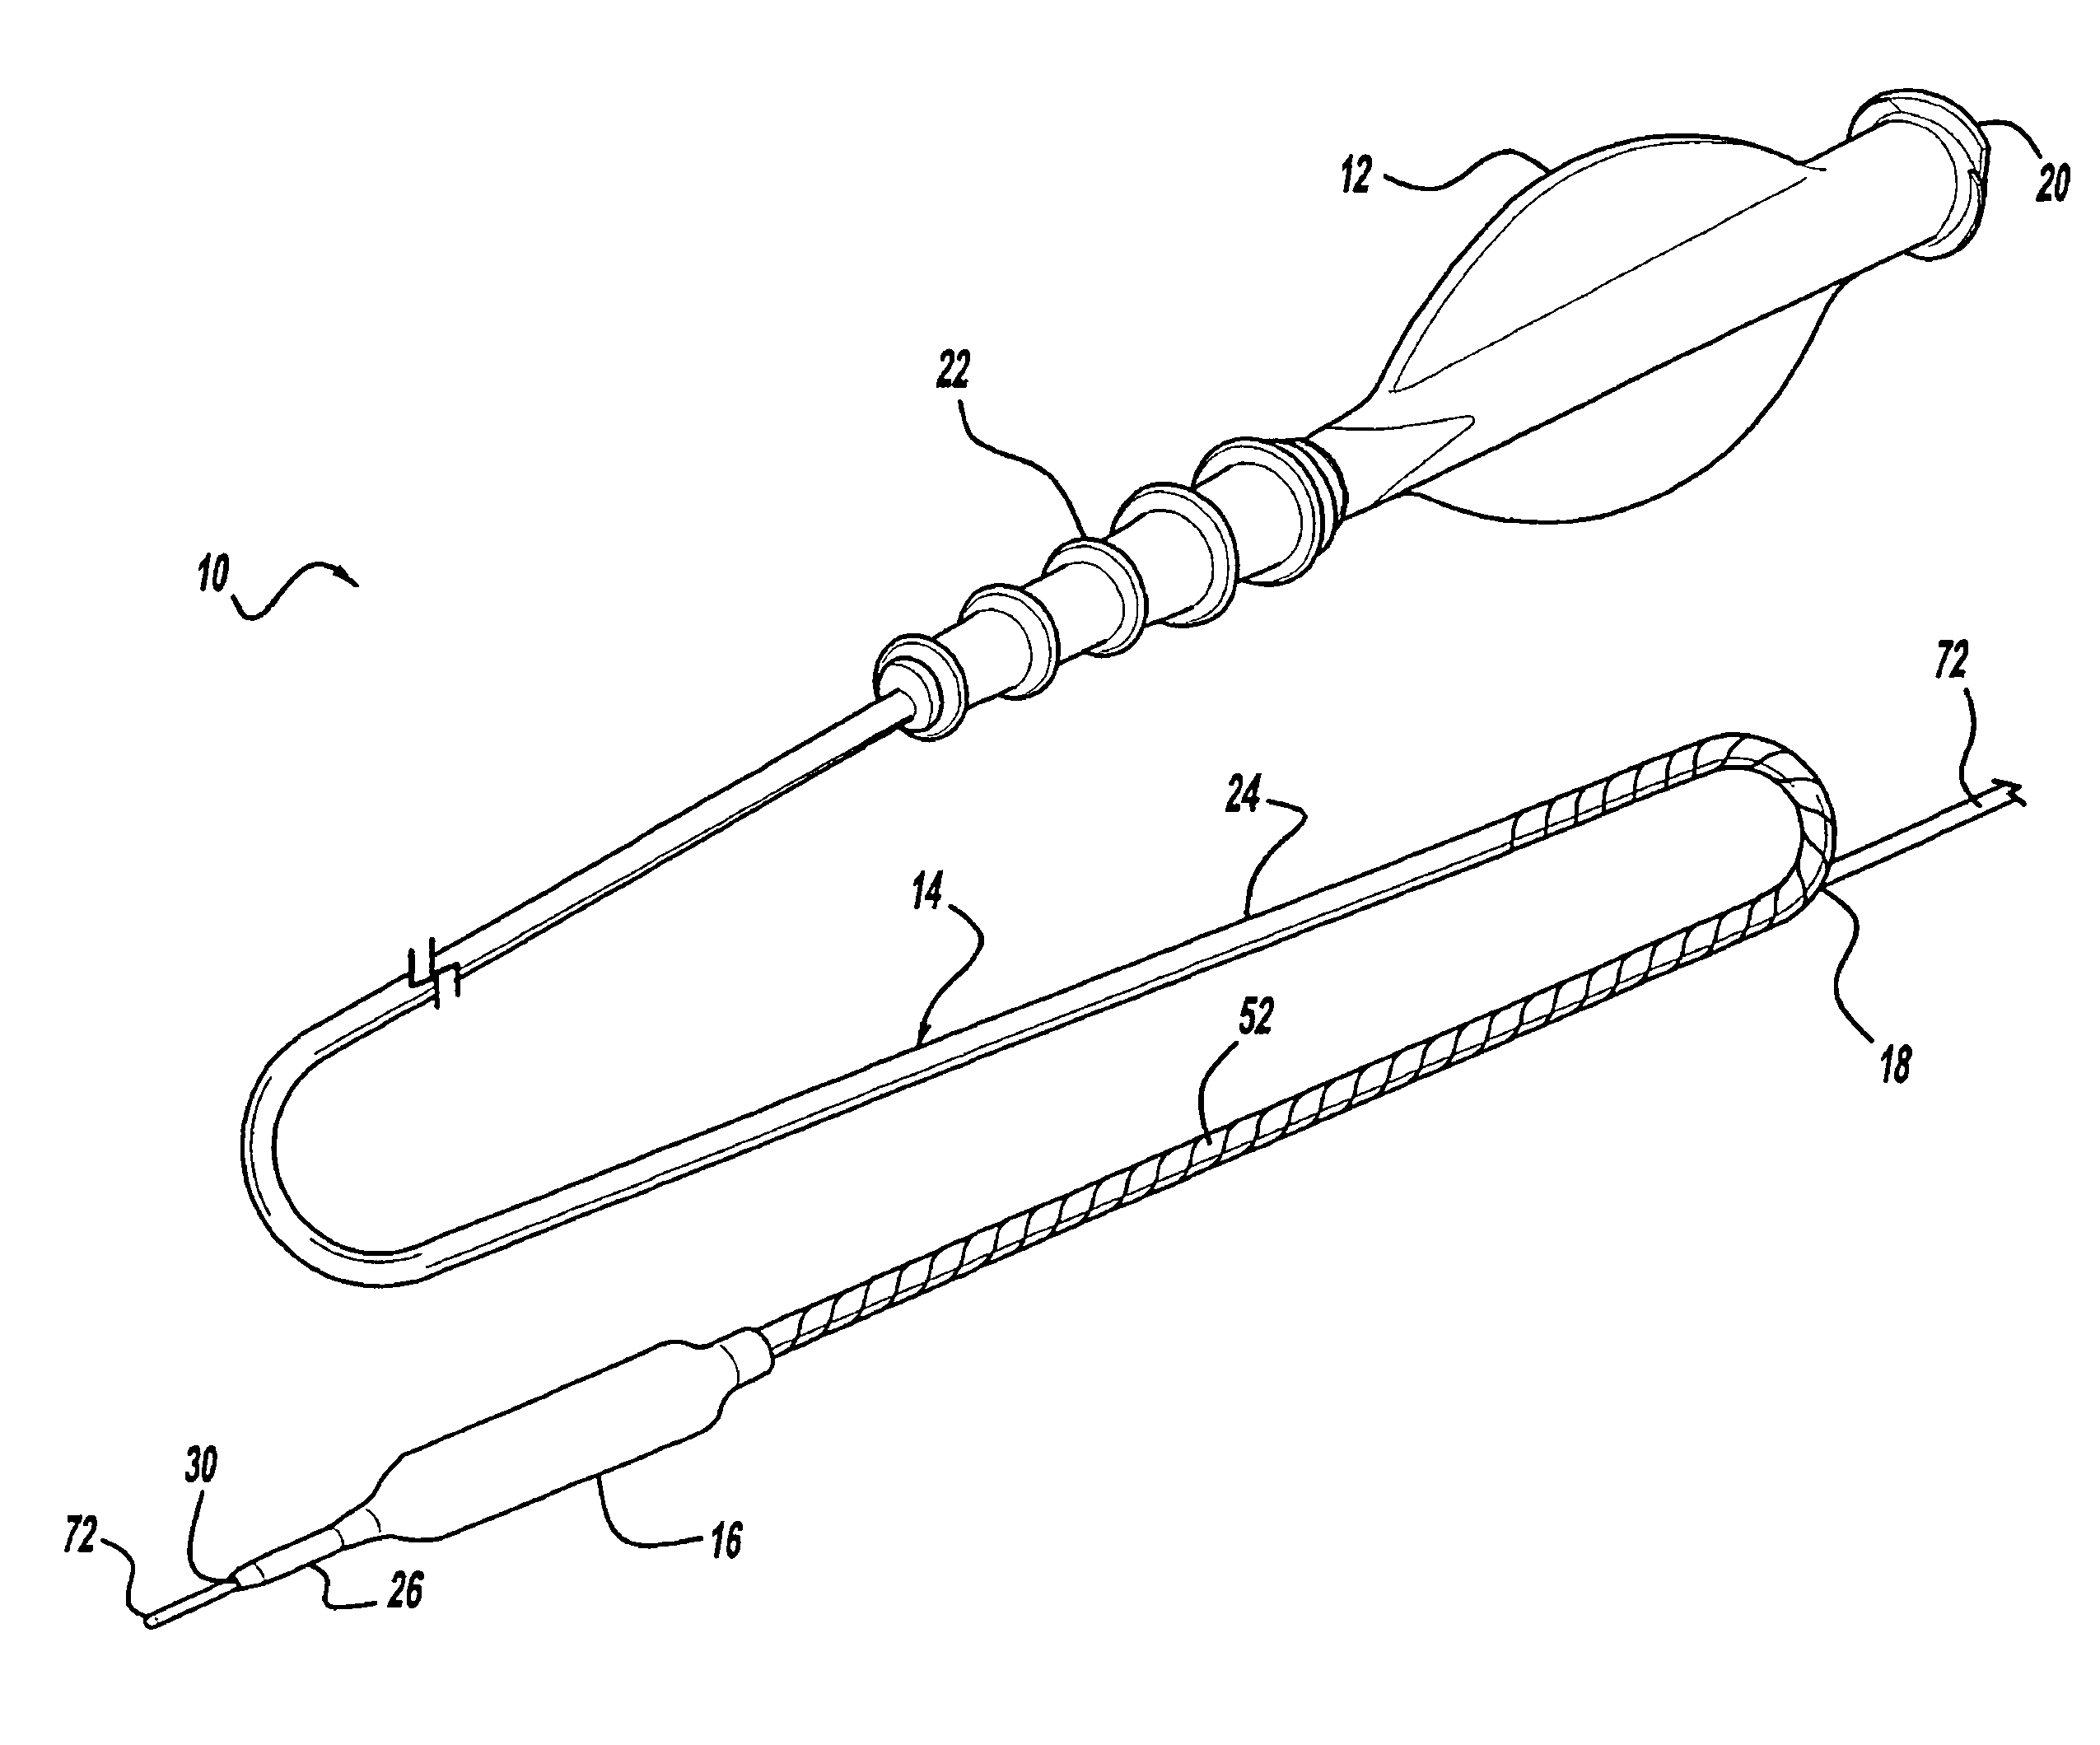 Rapid-exchange balloon catheter shaft and method